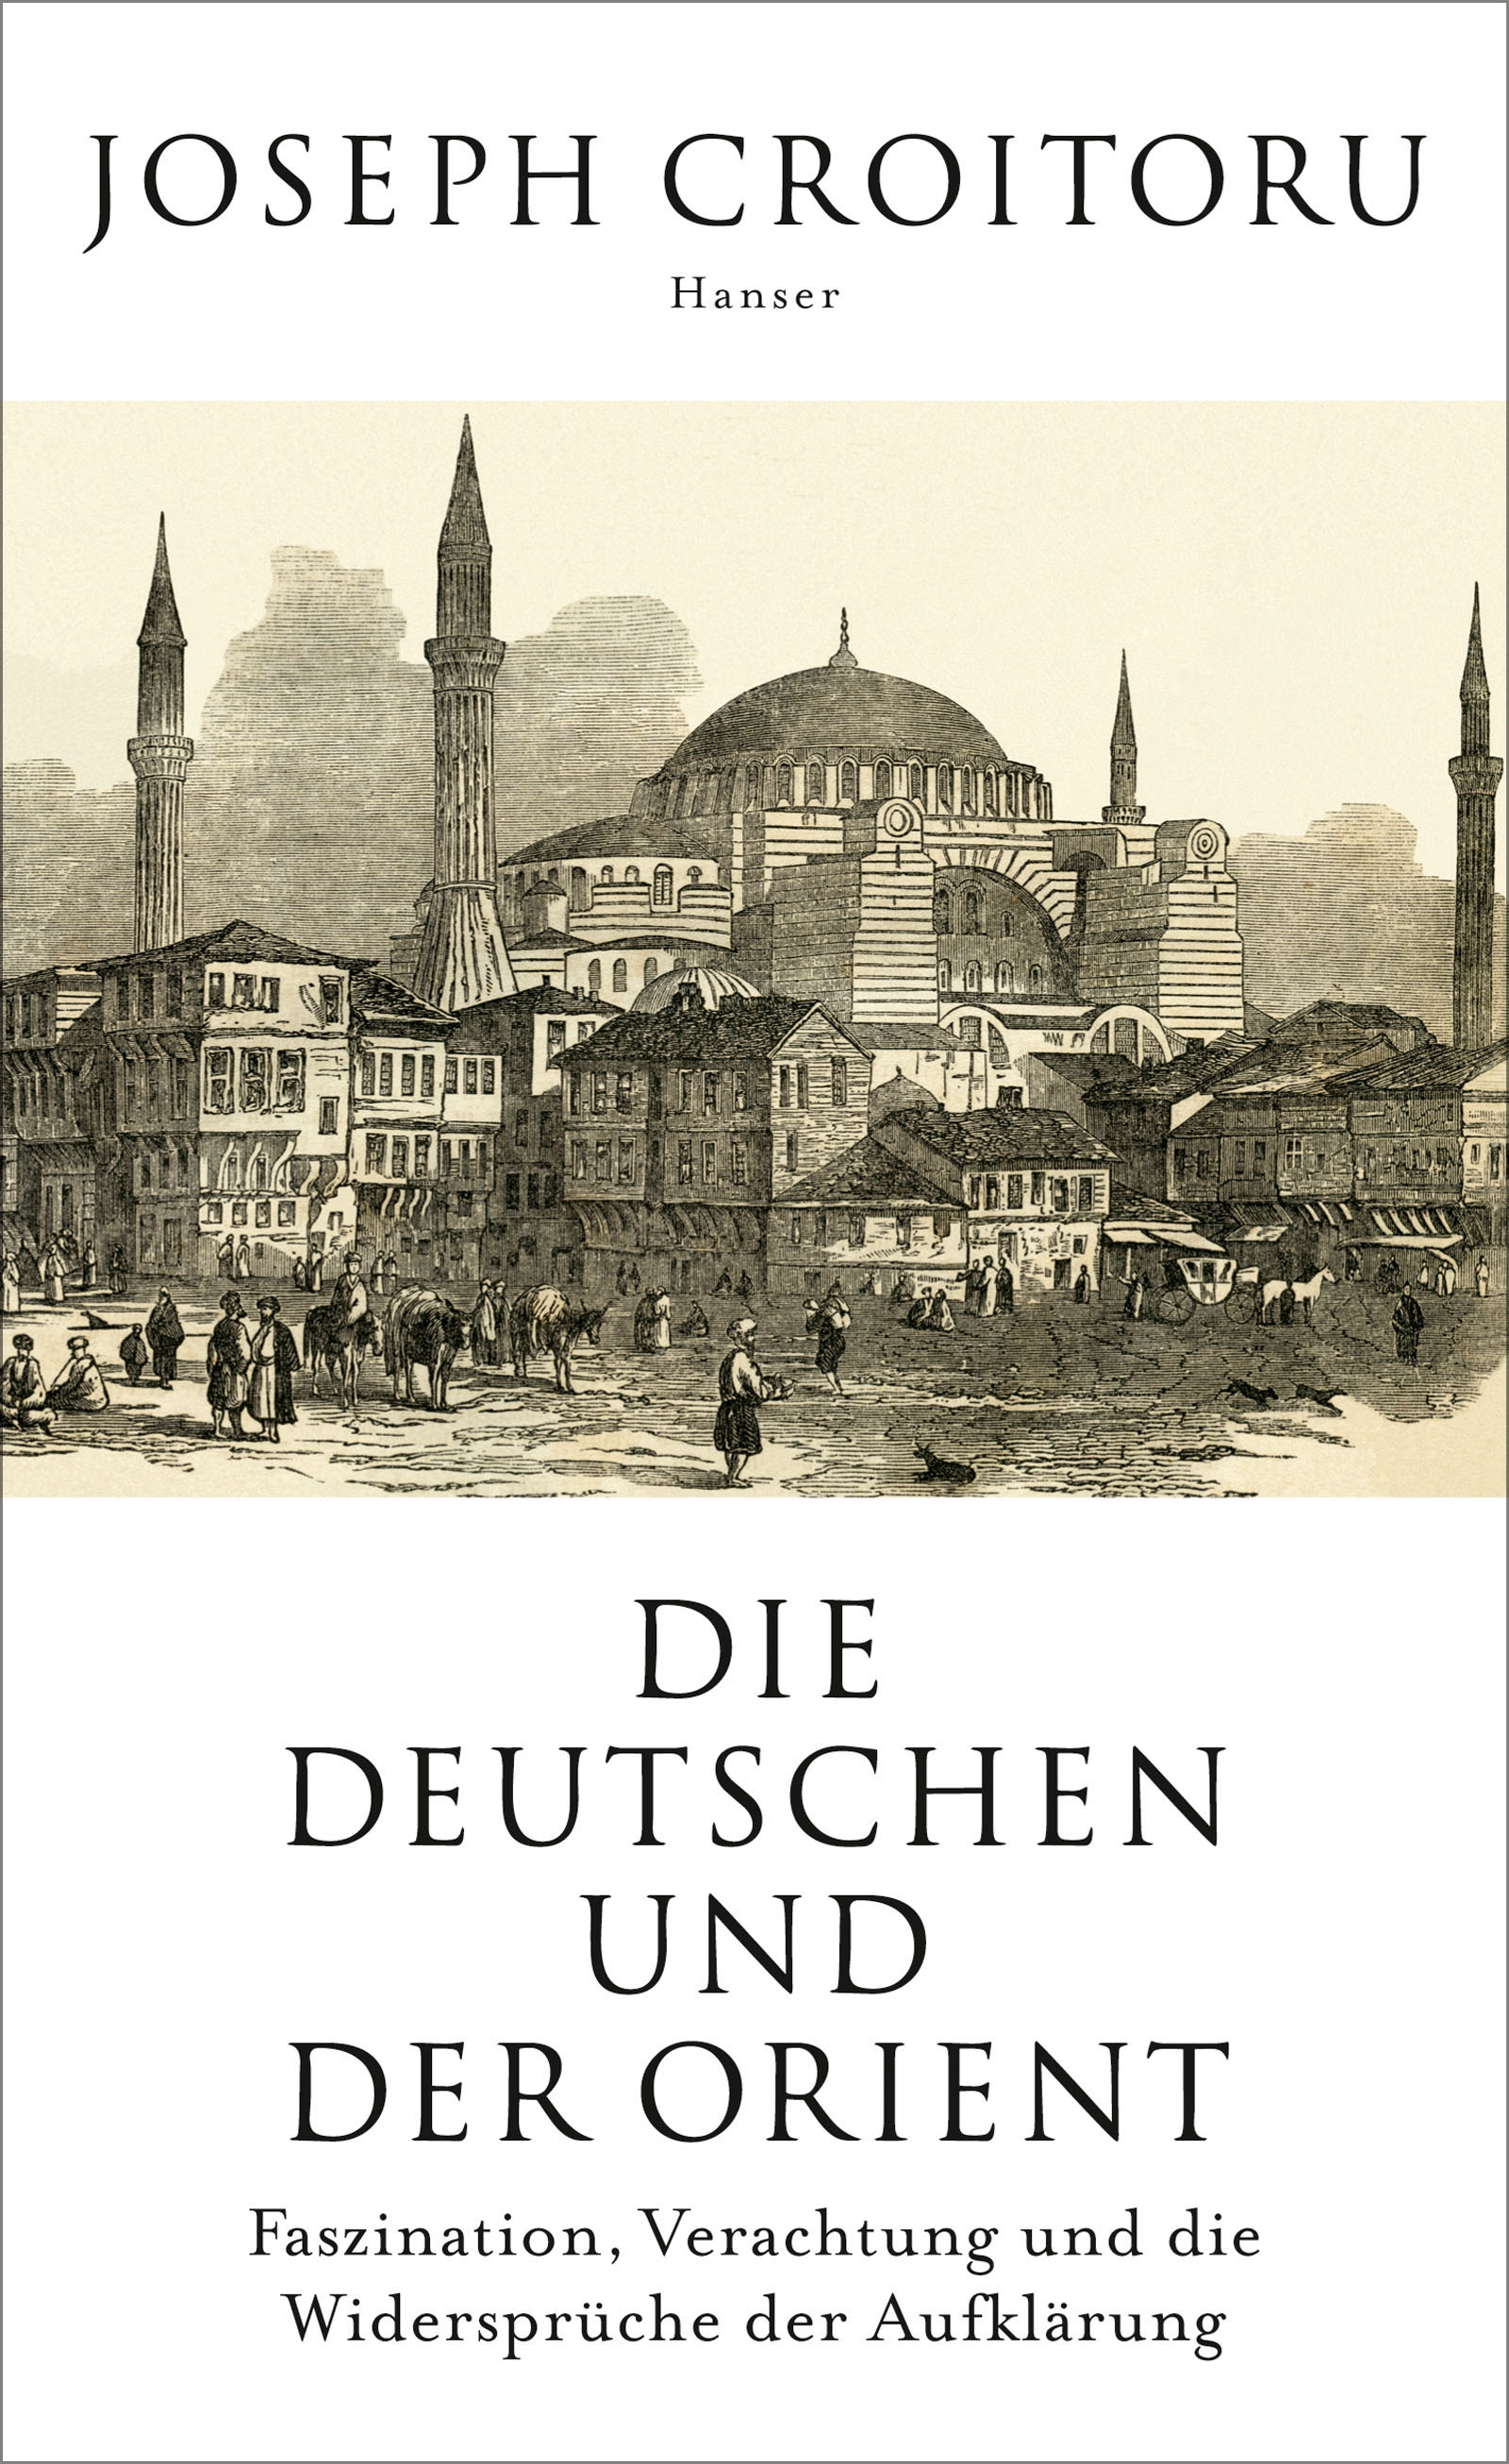 الغلاف الألماني لكتاب "الألمان والمشرق" للمؤرخ جوزيف كرواتورو.  Carl Hanser Verlag